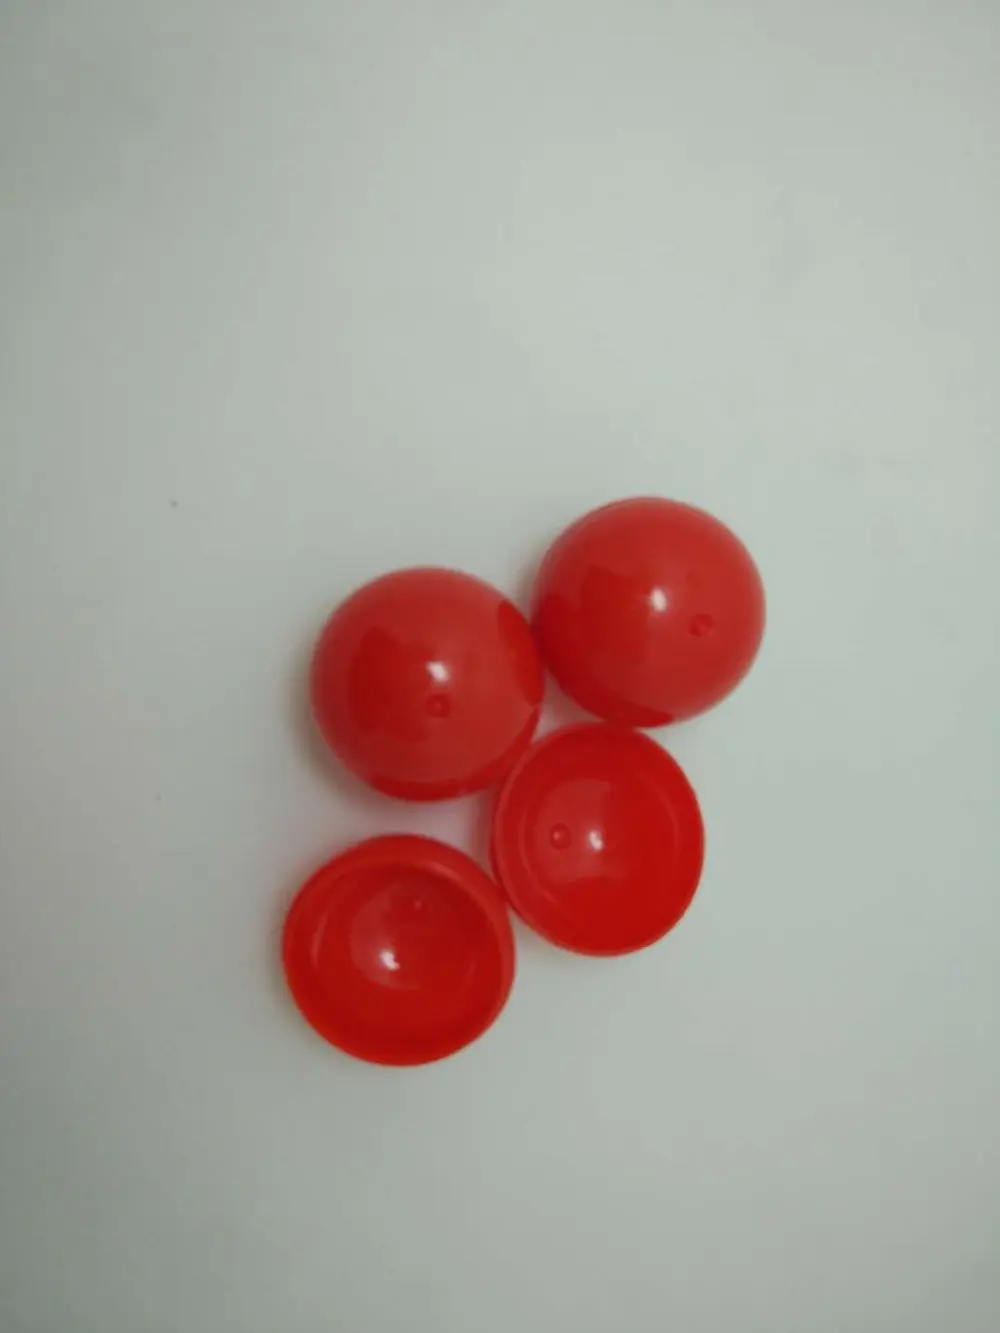 100 шт. 30 мм полный красный цвет игрушки капсулы с бесплатной доставкой; Пластик игрушка капсула сплошной цвет мяч